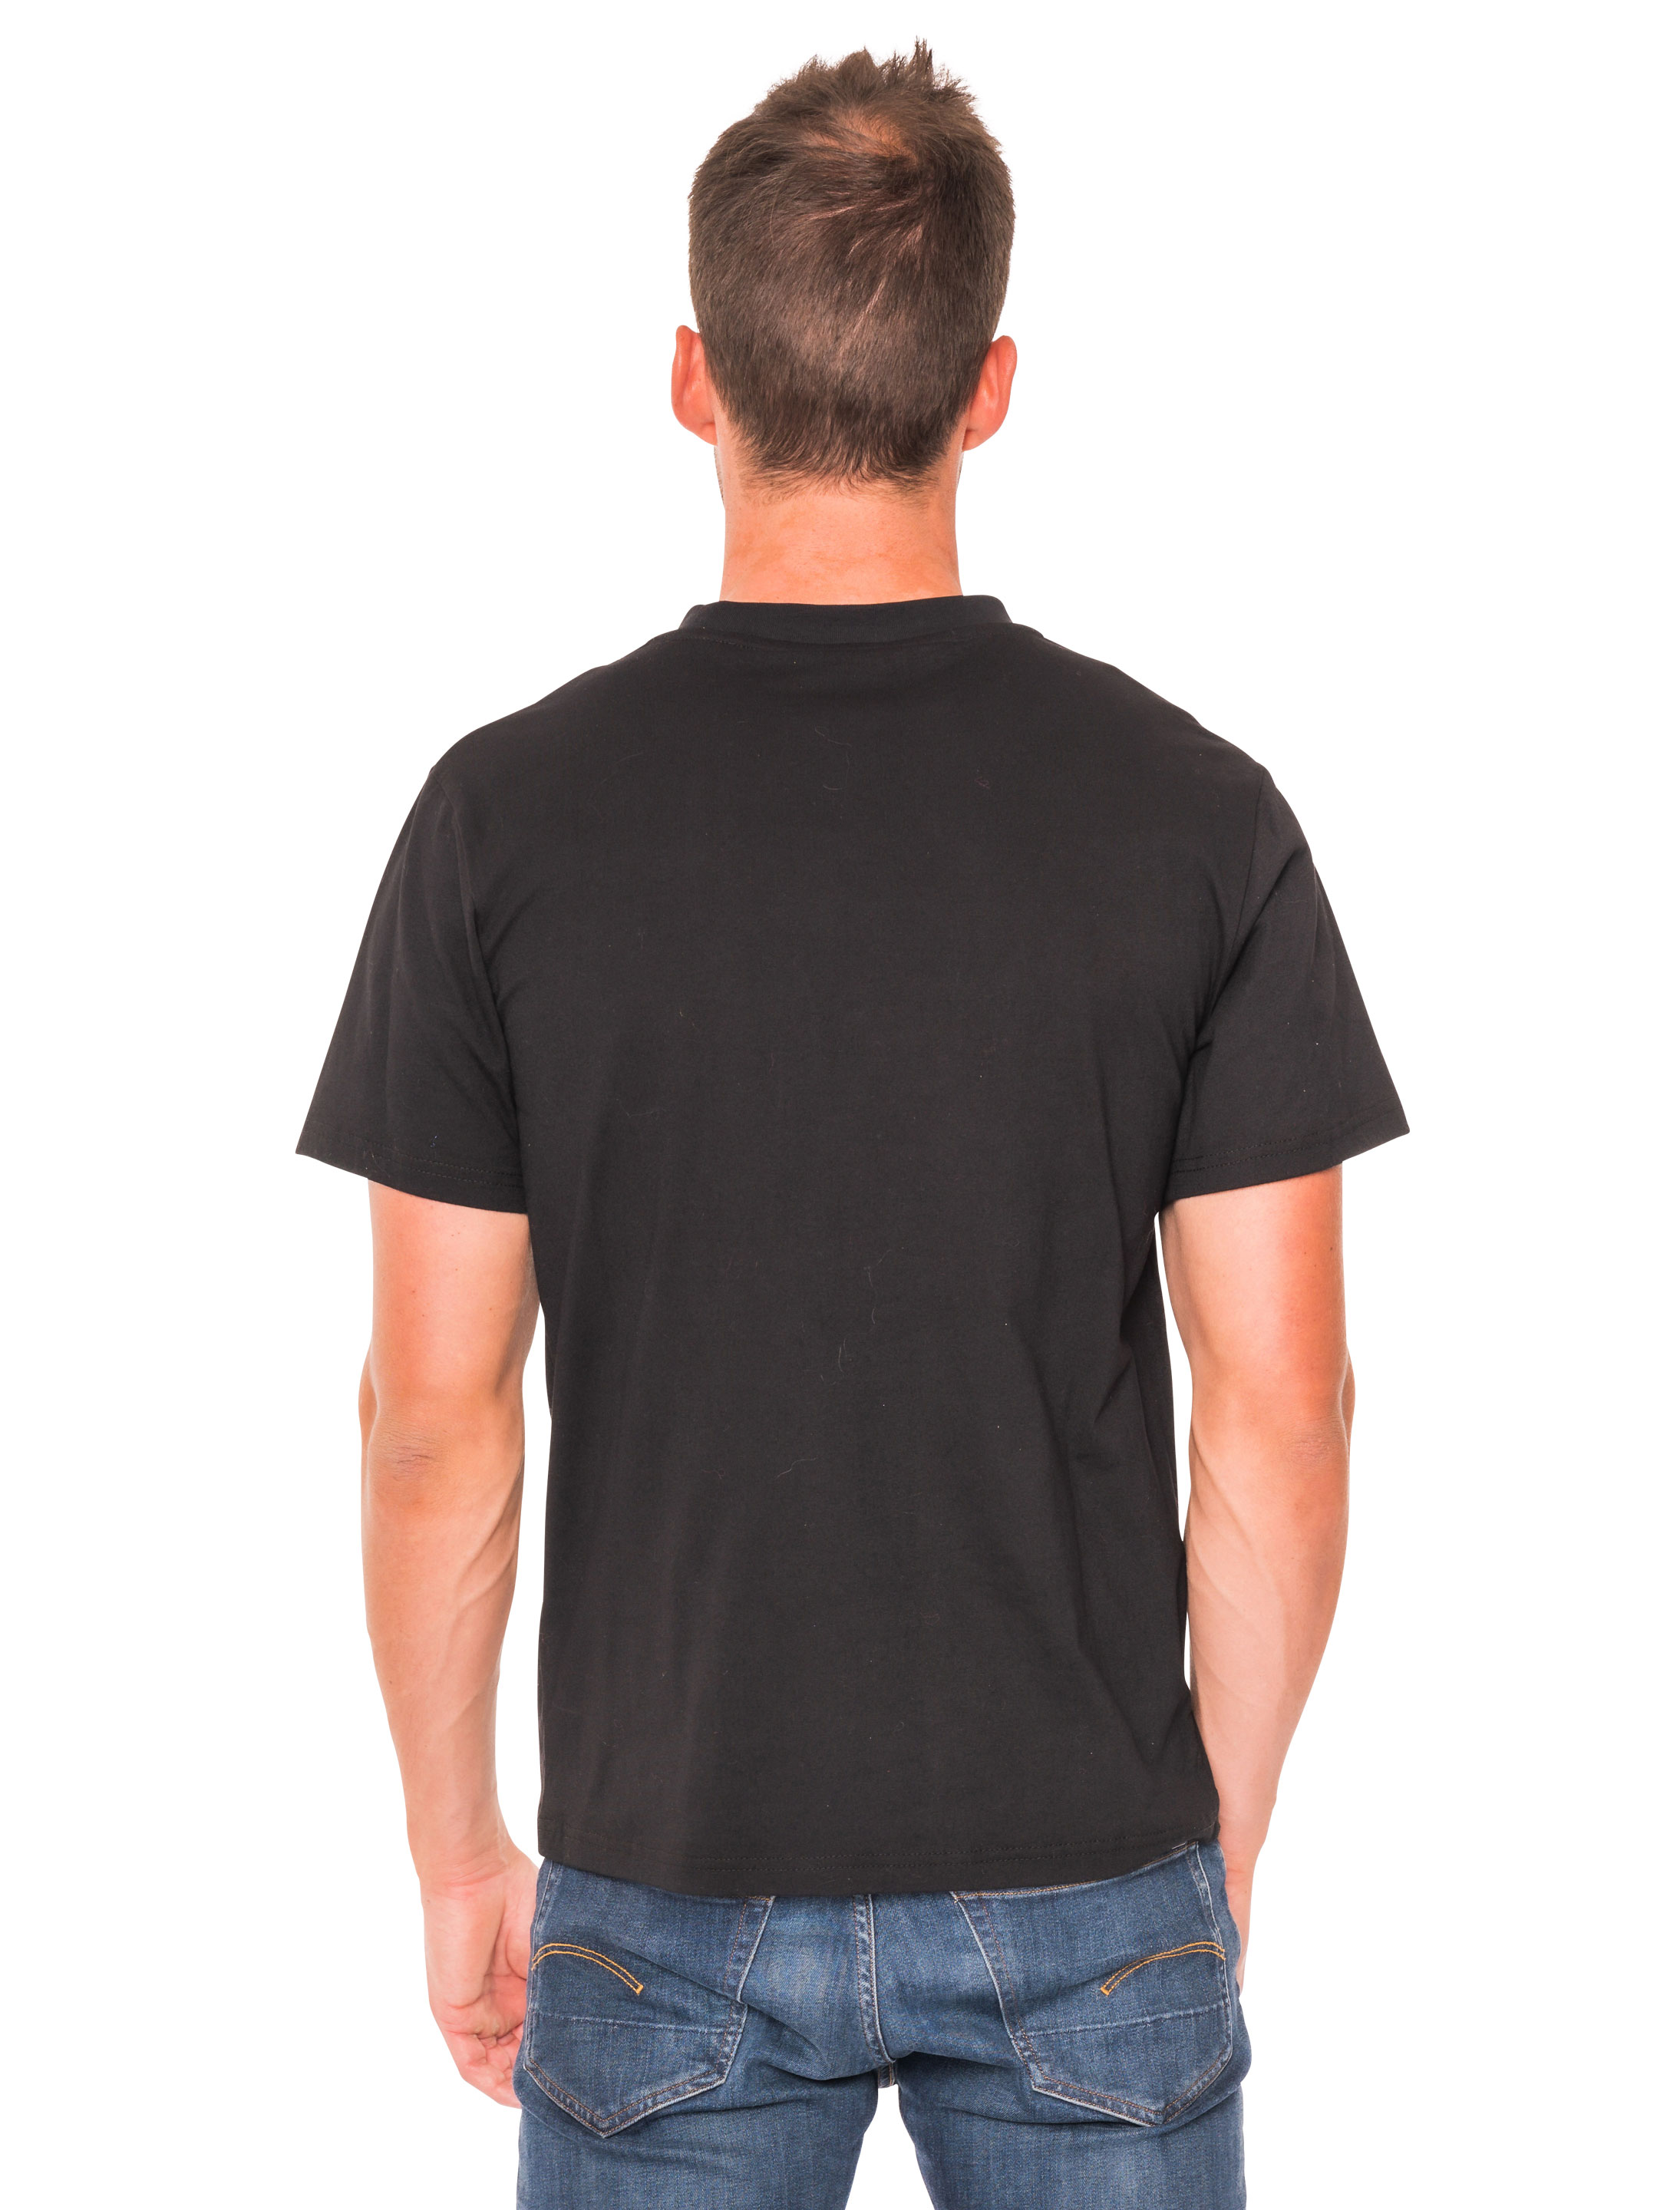 T-Shirt 90er Jahre Herren schwarz 2XL